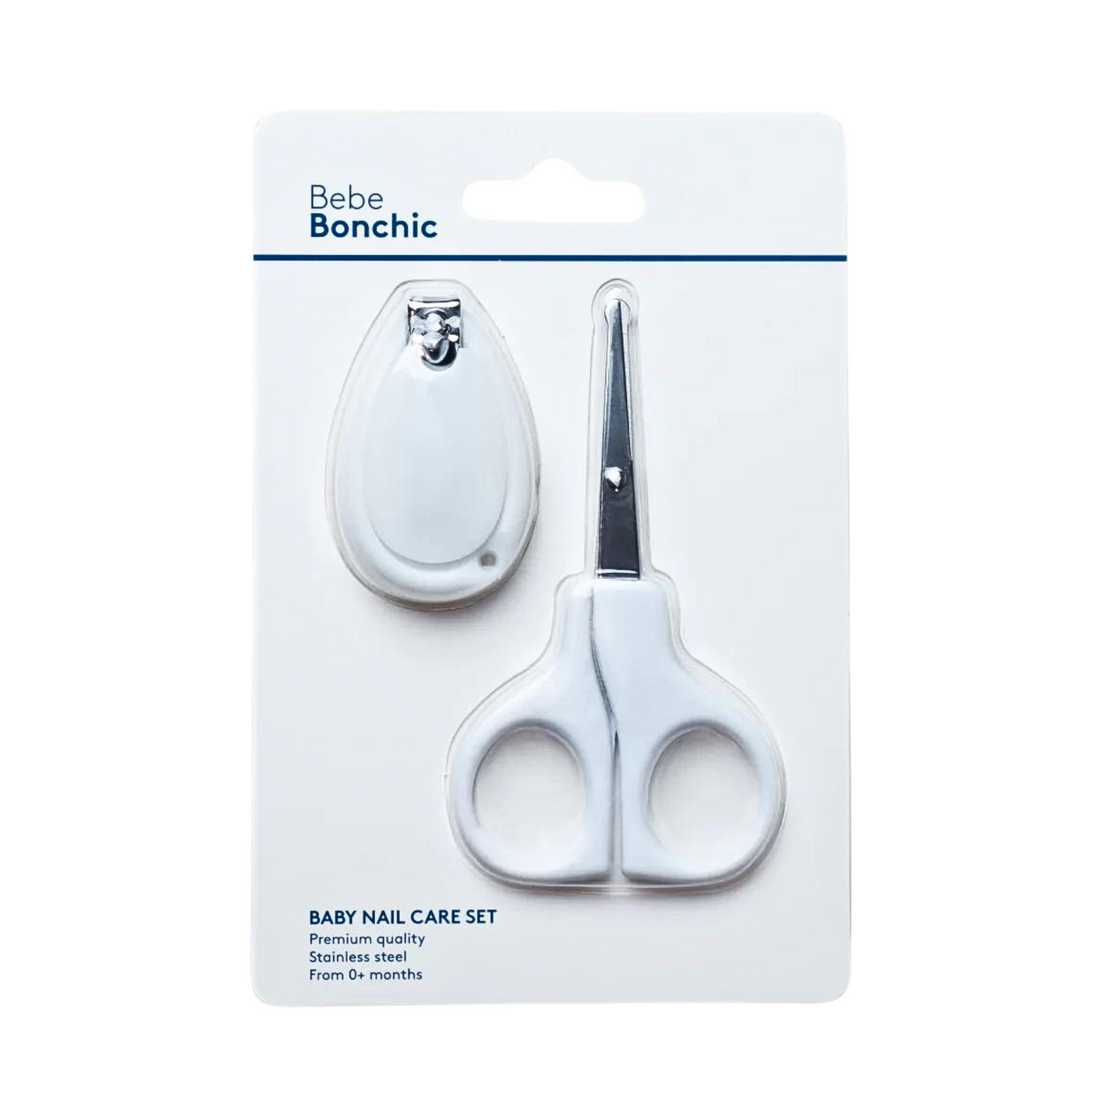 Baby scissors set